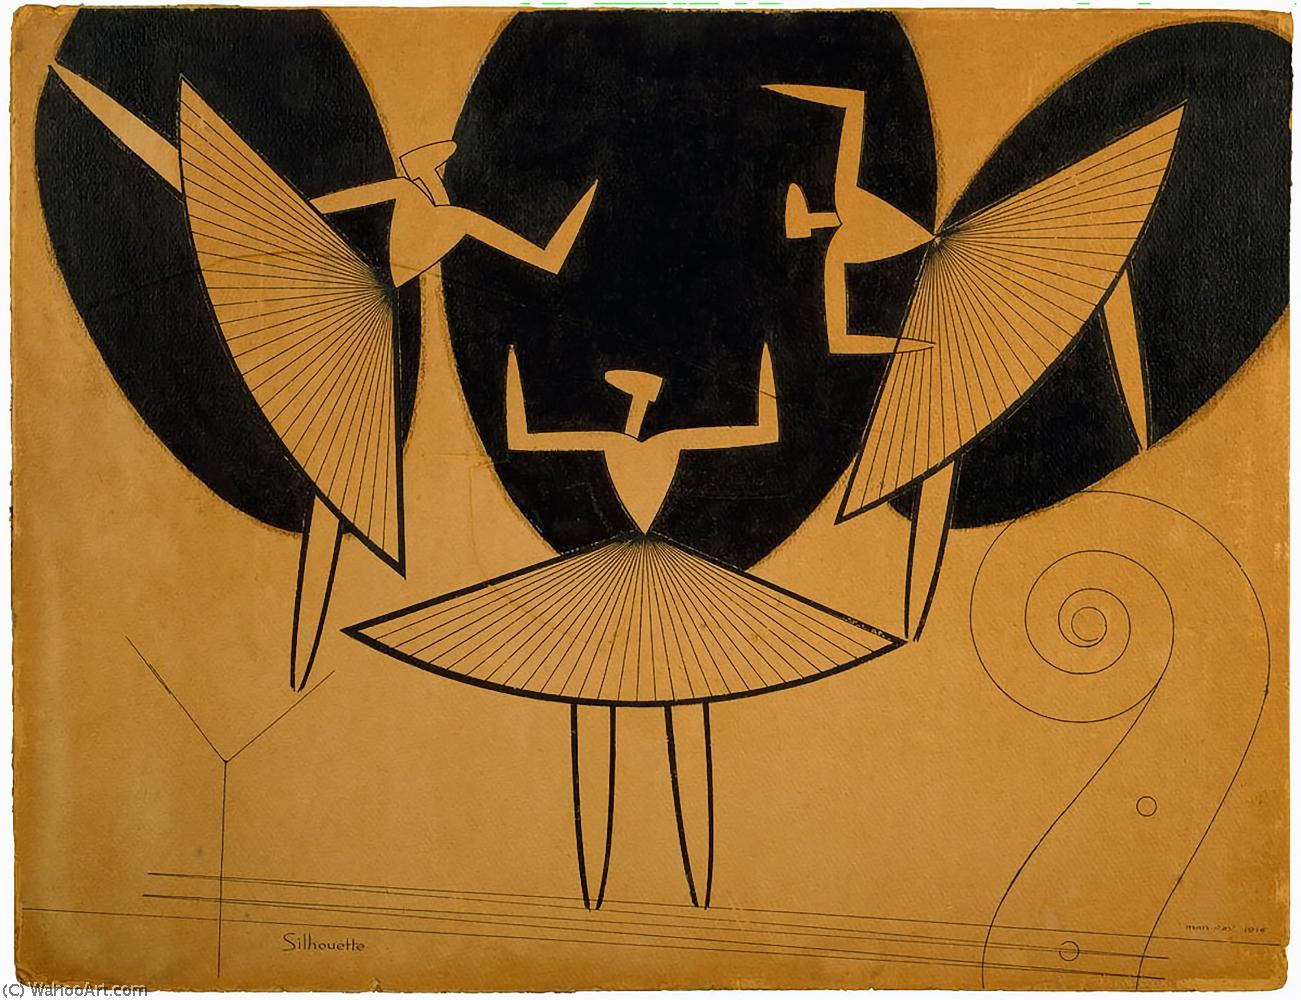 Wikioo.org - Bách khoa toàn thư về mỹ thuật - Vẽ tranh, Tác phẩm nghệ thuật Man Ray - Silhouette